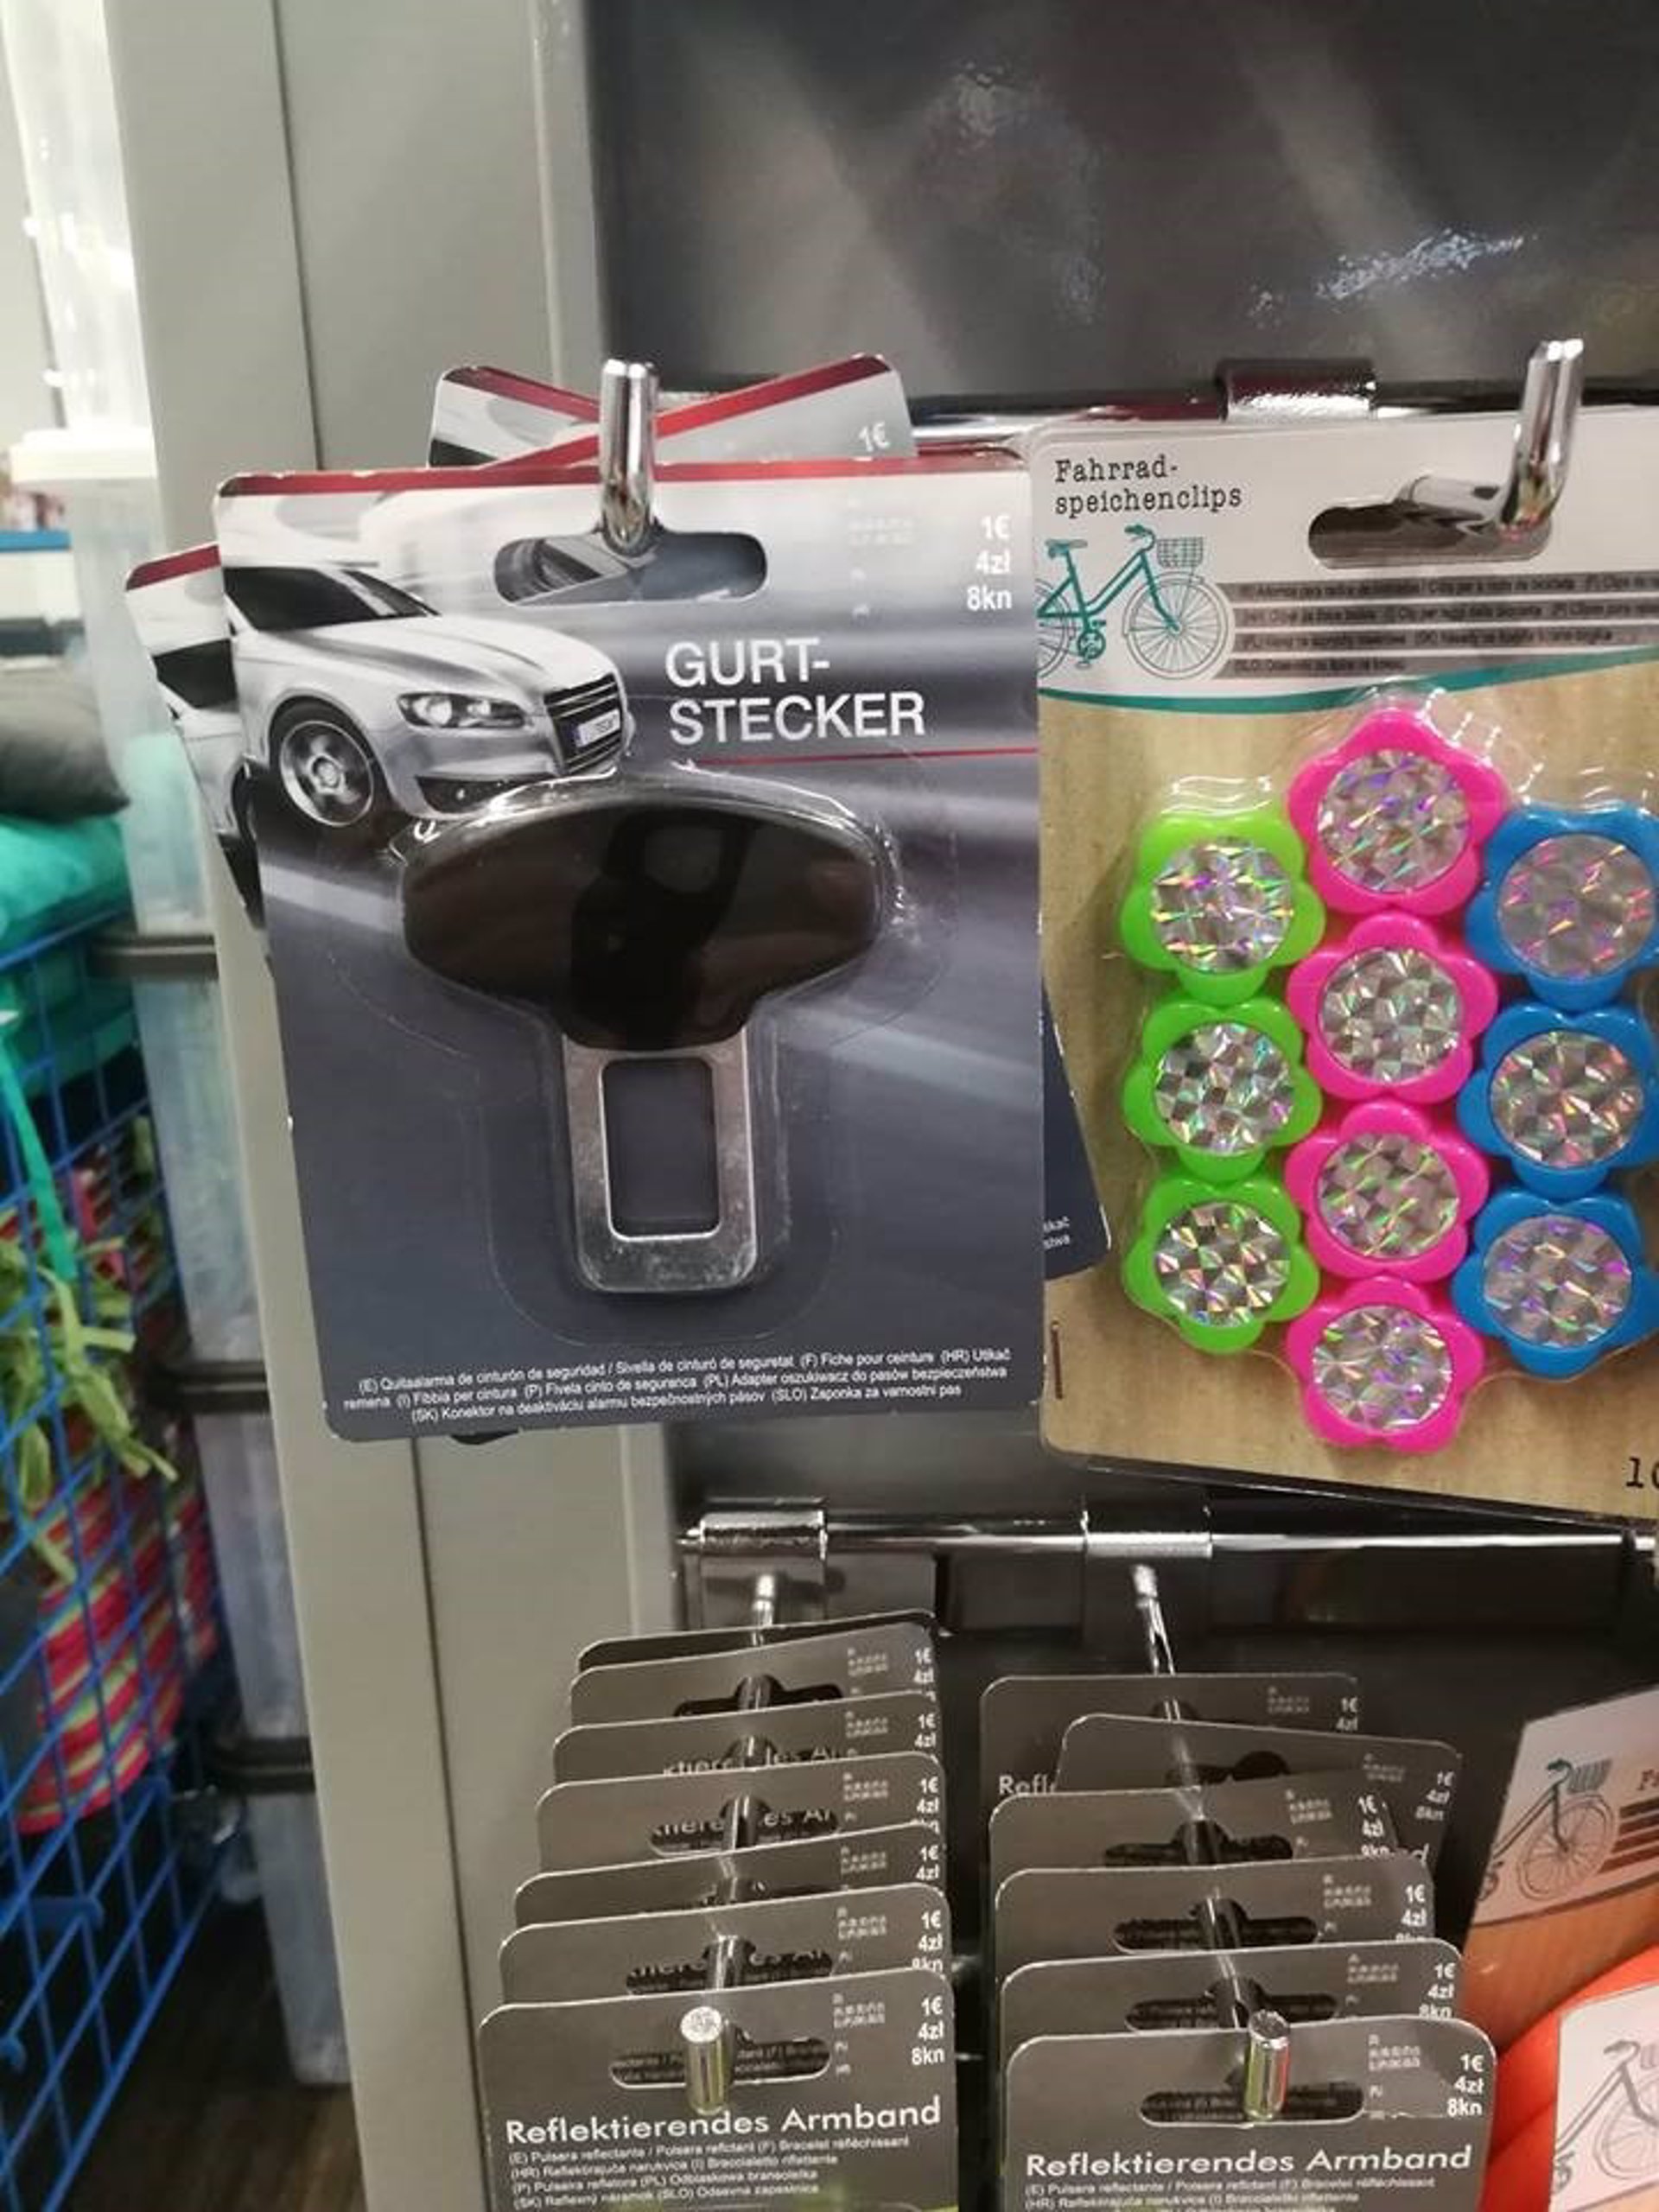 Denuncian a una cadena de tiendas por vender un dispositivo para evitar el uso del cinturón de seguridad